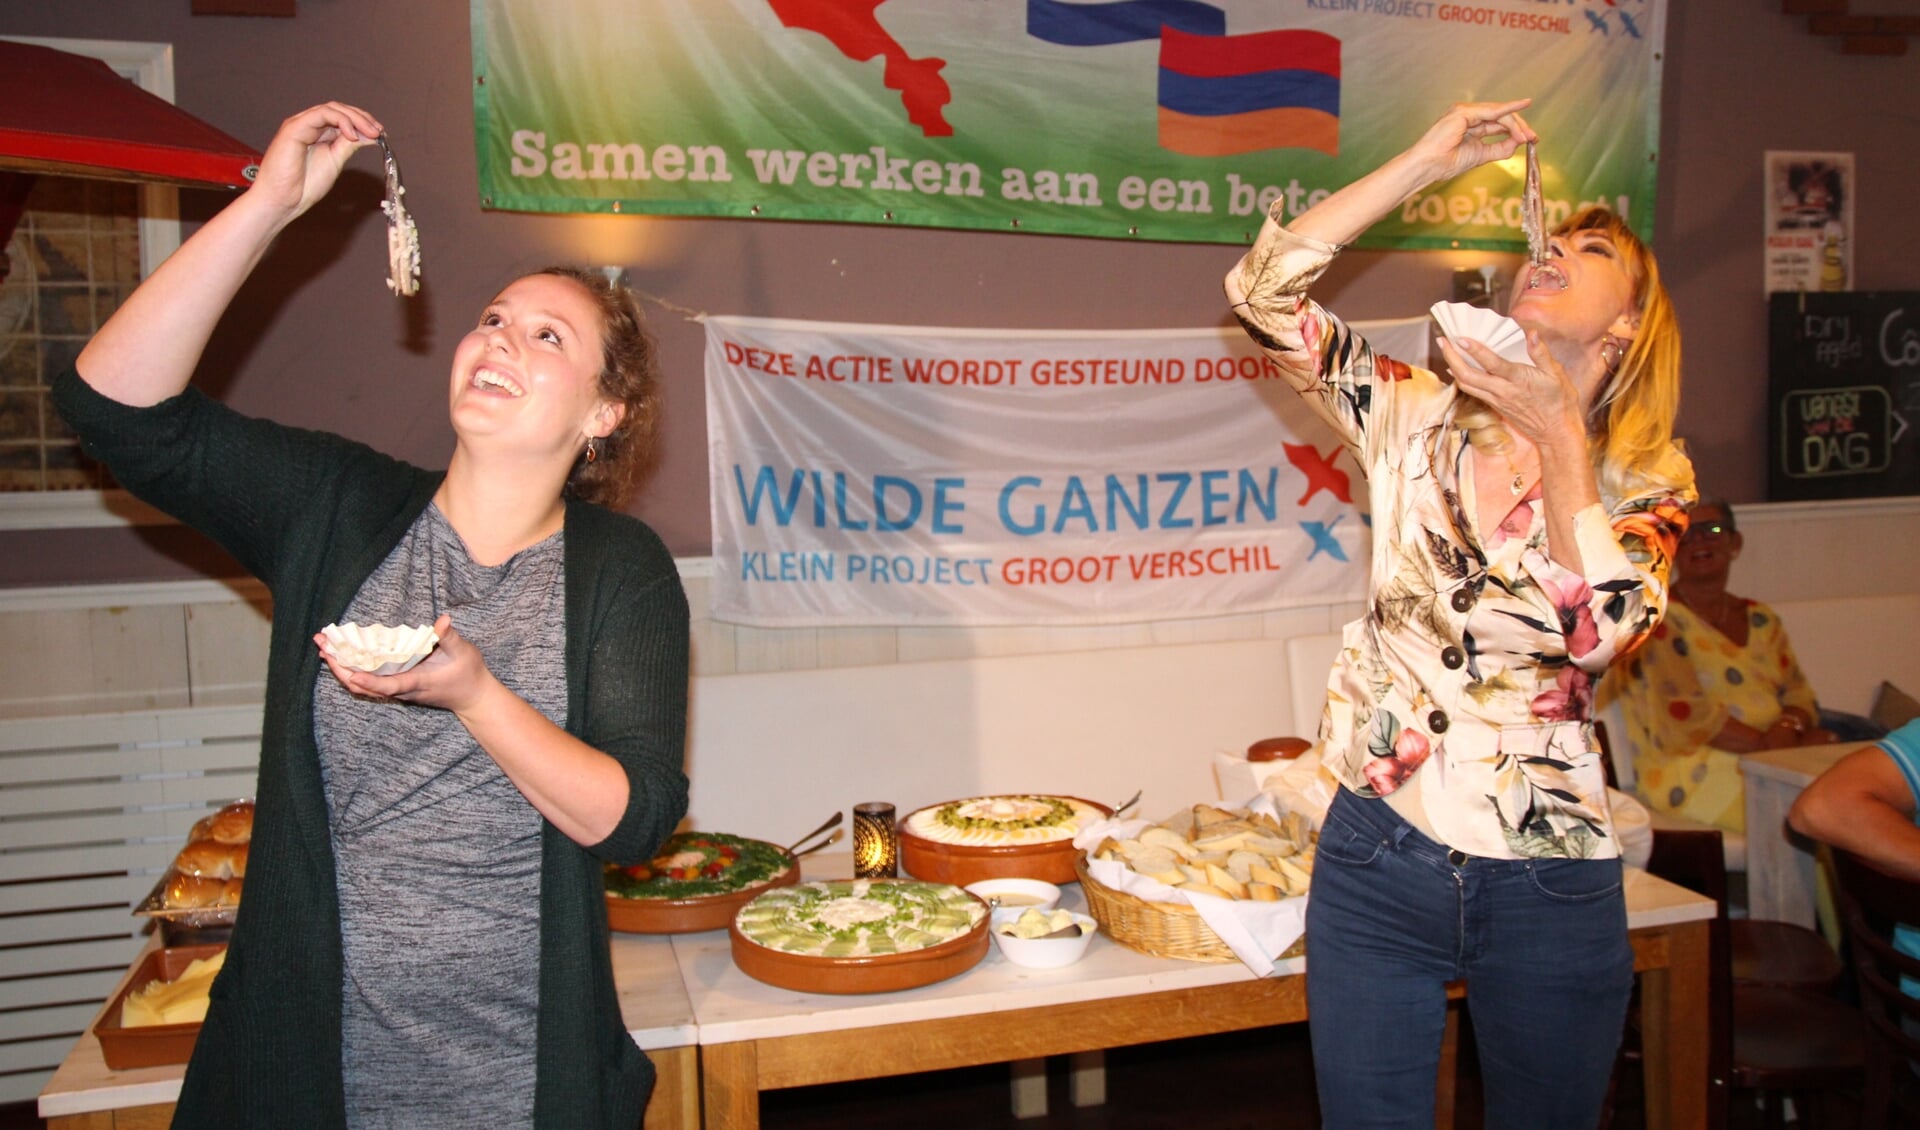 Vorig jaar werd de eerste hap genomen door ‘Wilde Ganzen’, nu verricht de ambassadeur de opening. 